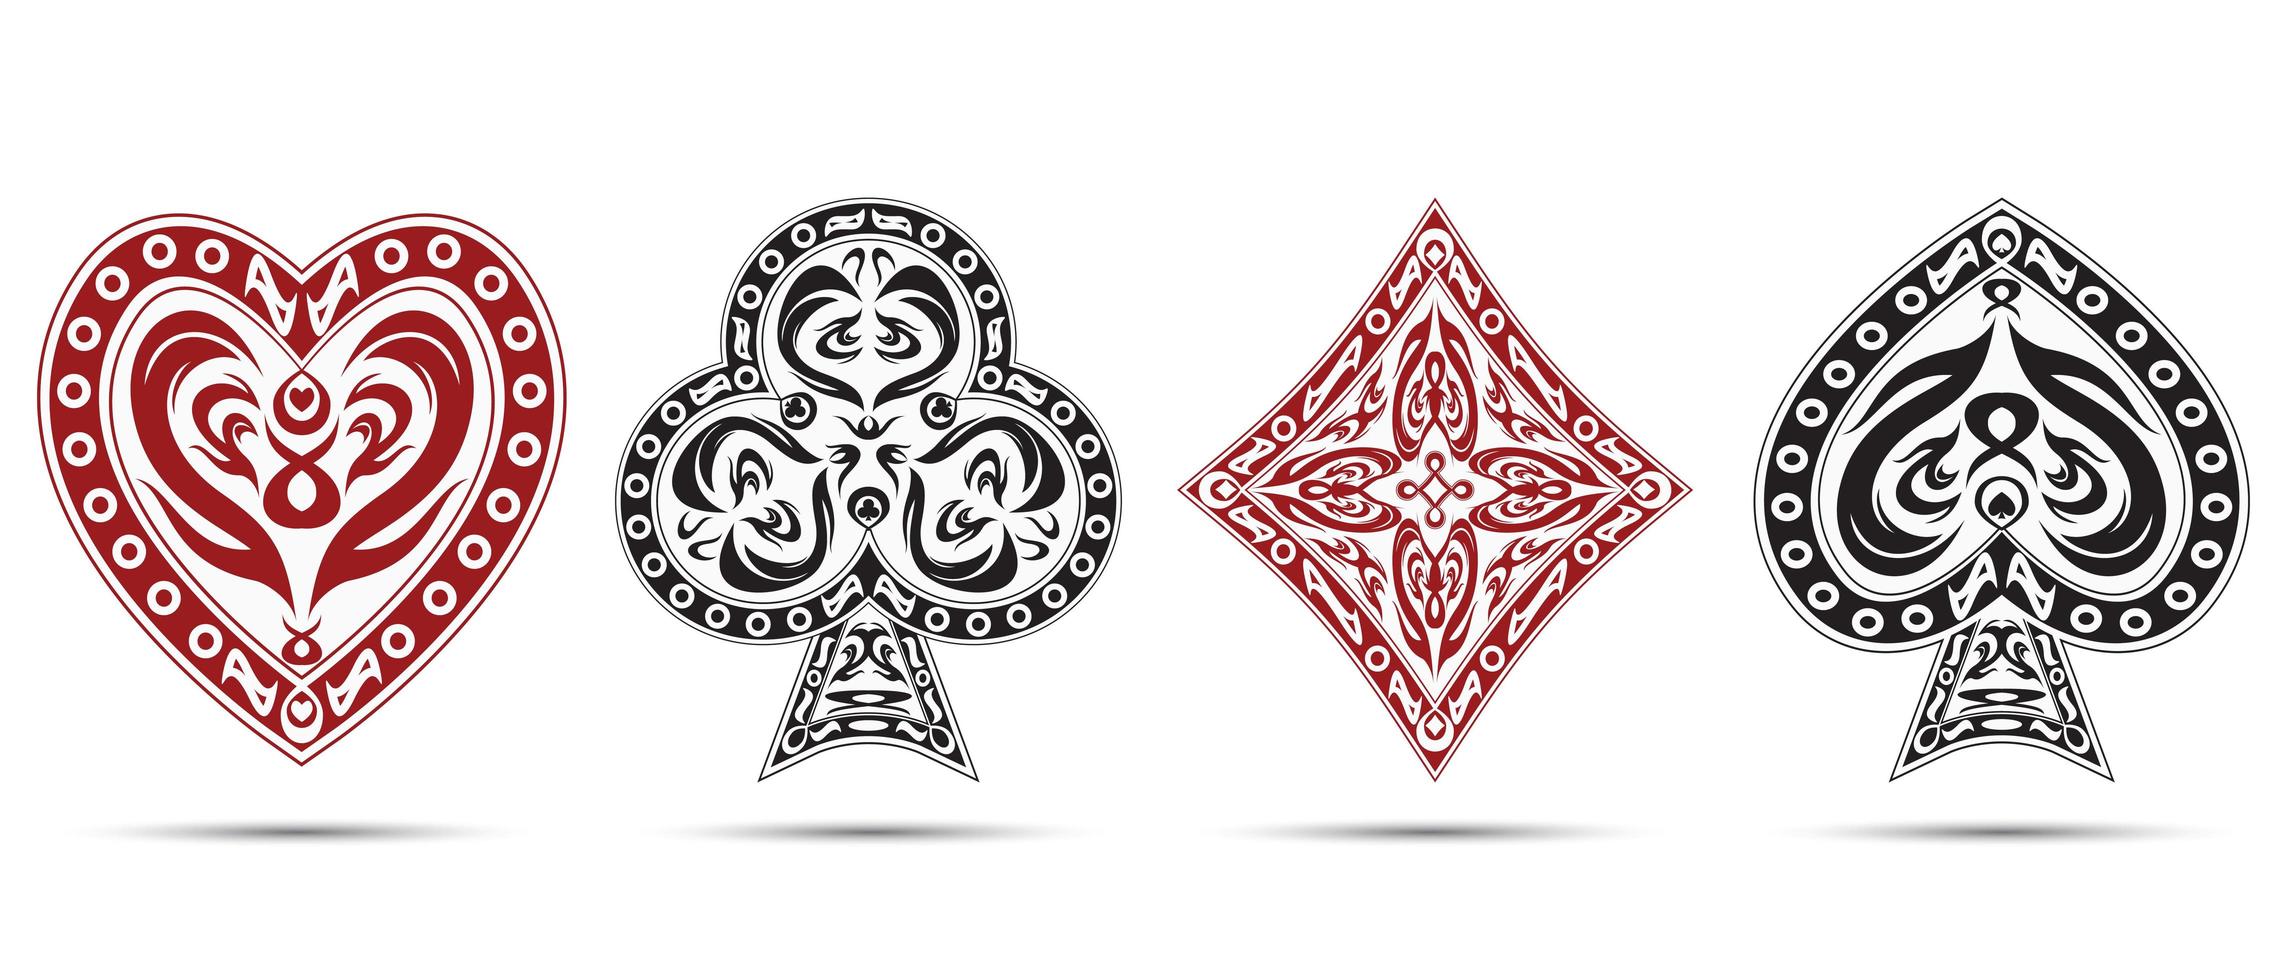 espadas, copas, ouros, clubes símbolos de pôquer vetor